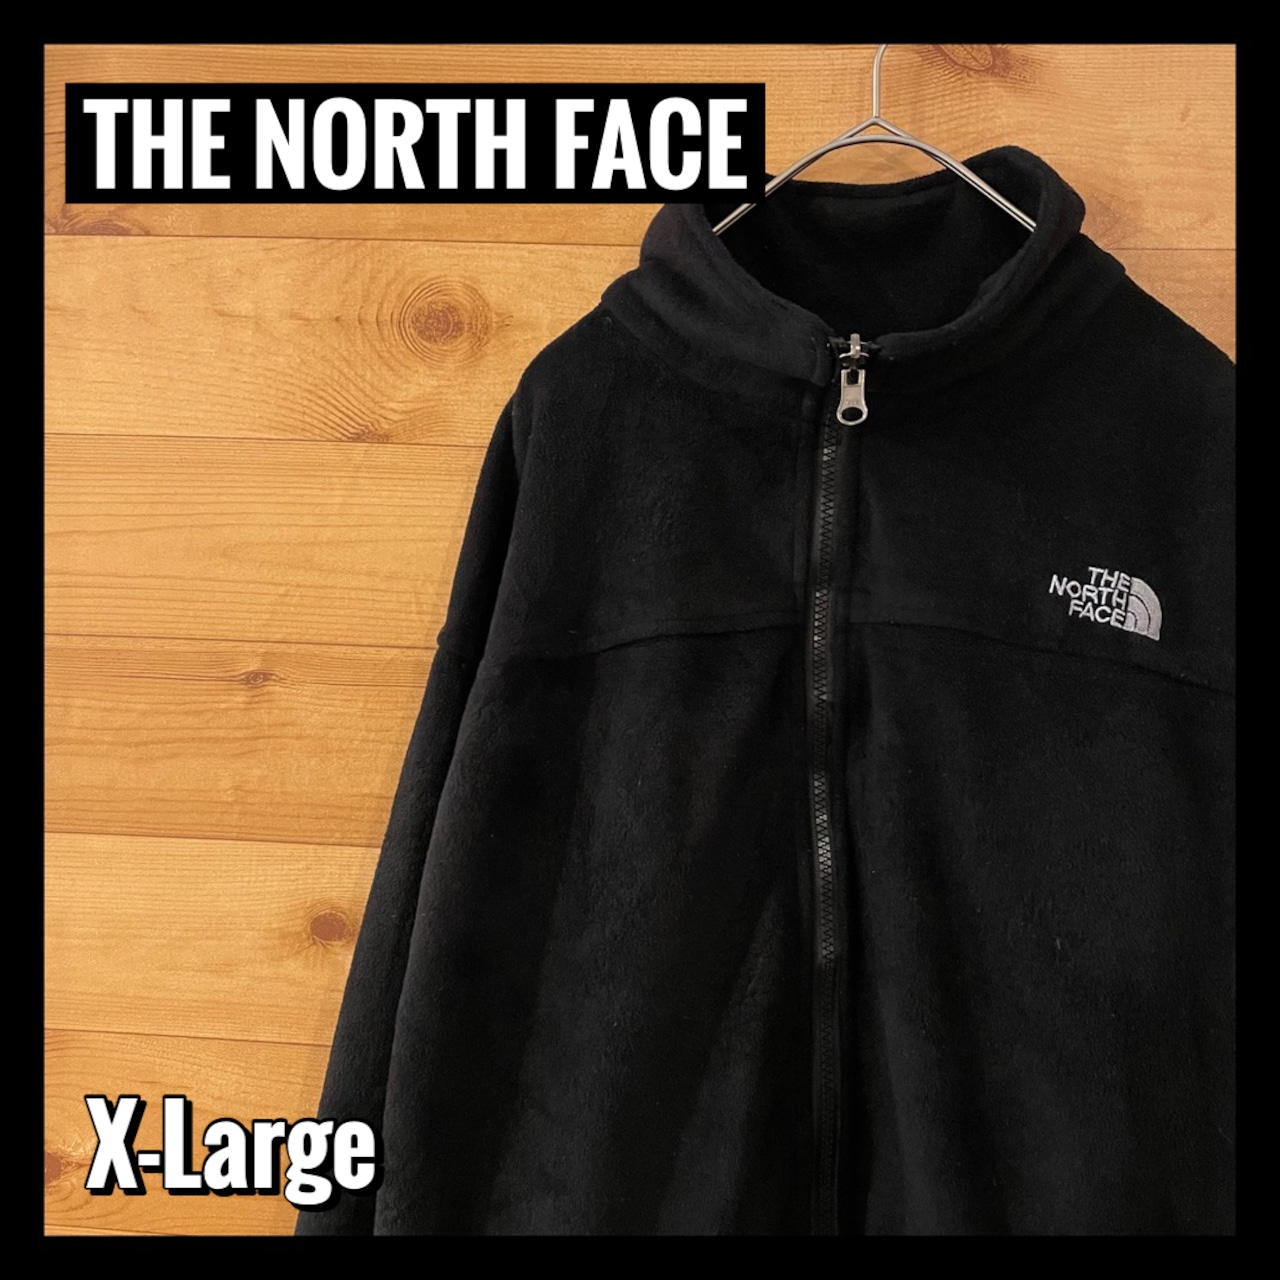 【THE NORTH FACE】SUMMIT フリースジャケット サミットシリーズ hyvent 刺繍ロゴ フルジップ X-Large アメリカ古着